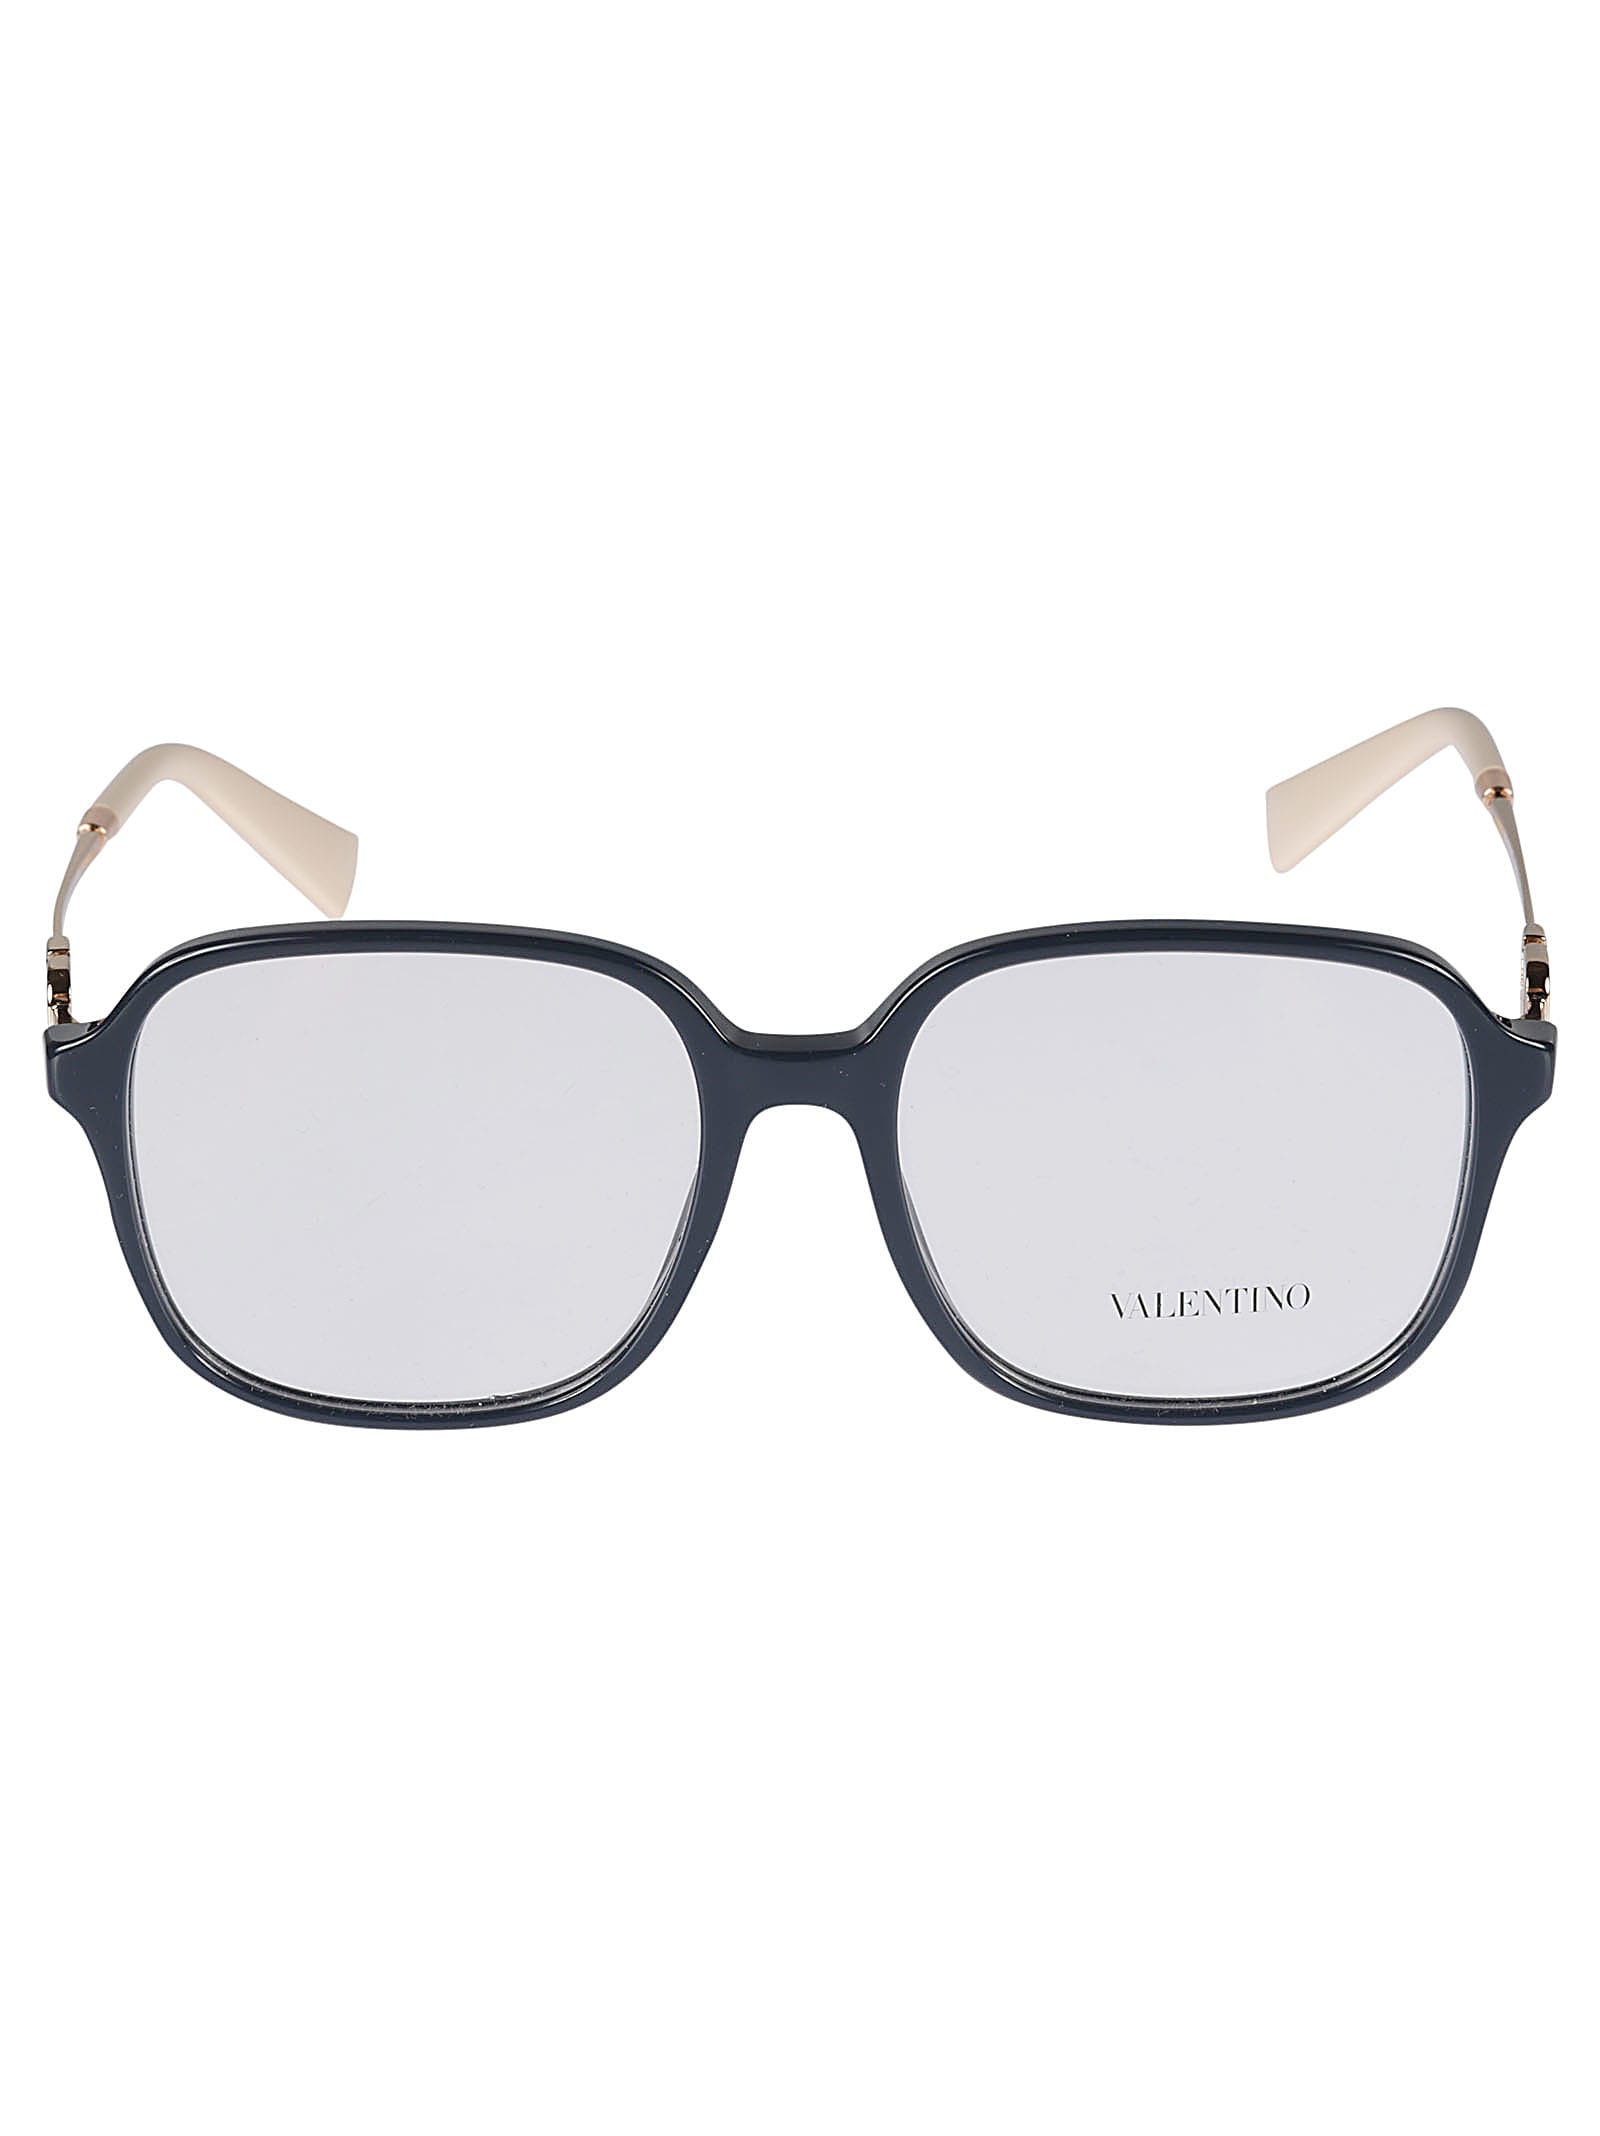 Valentino Logo Sided Square Framed Glasses